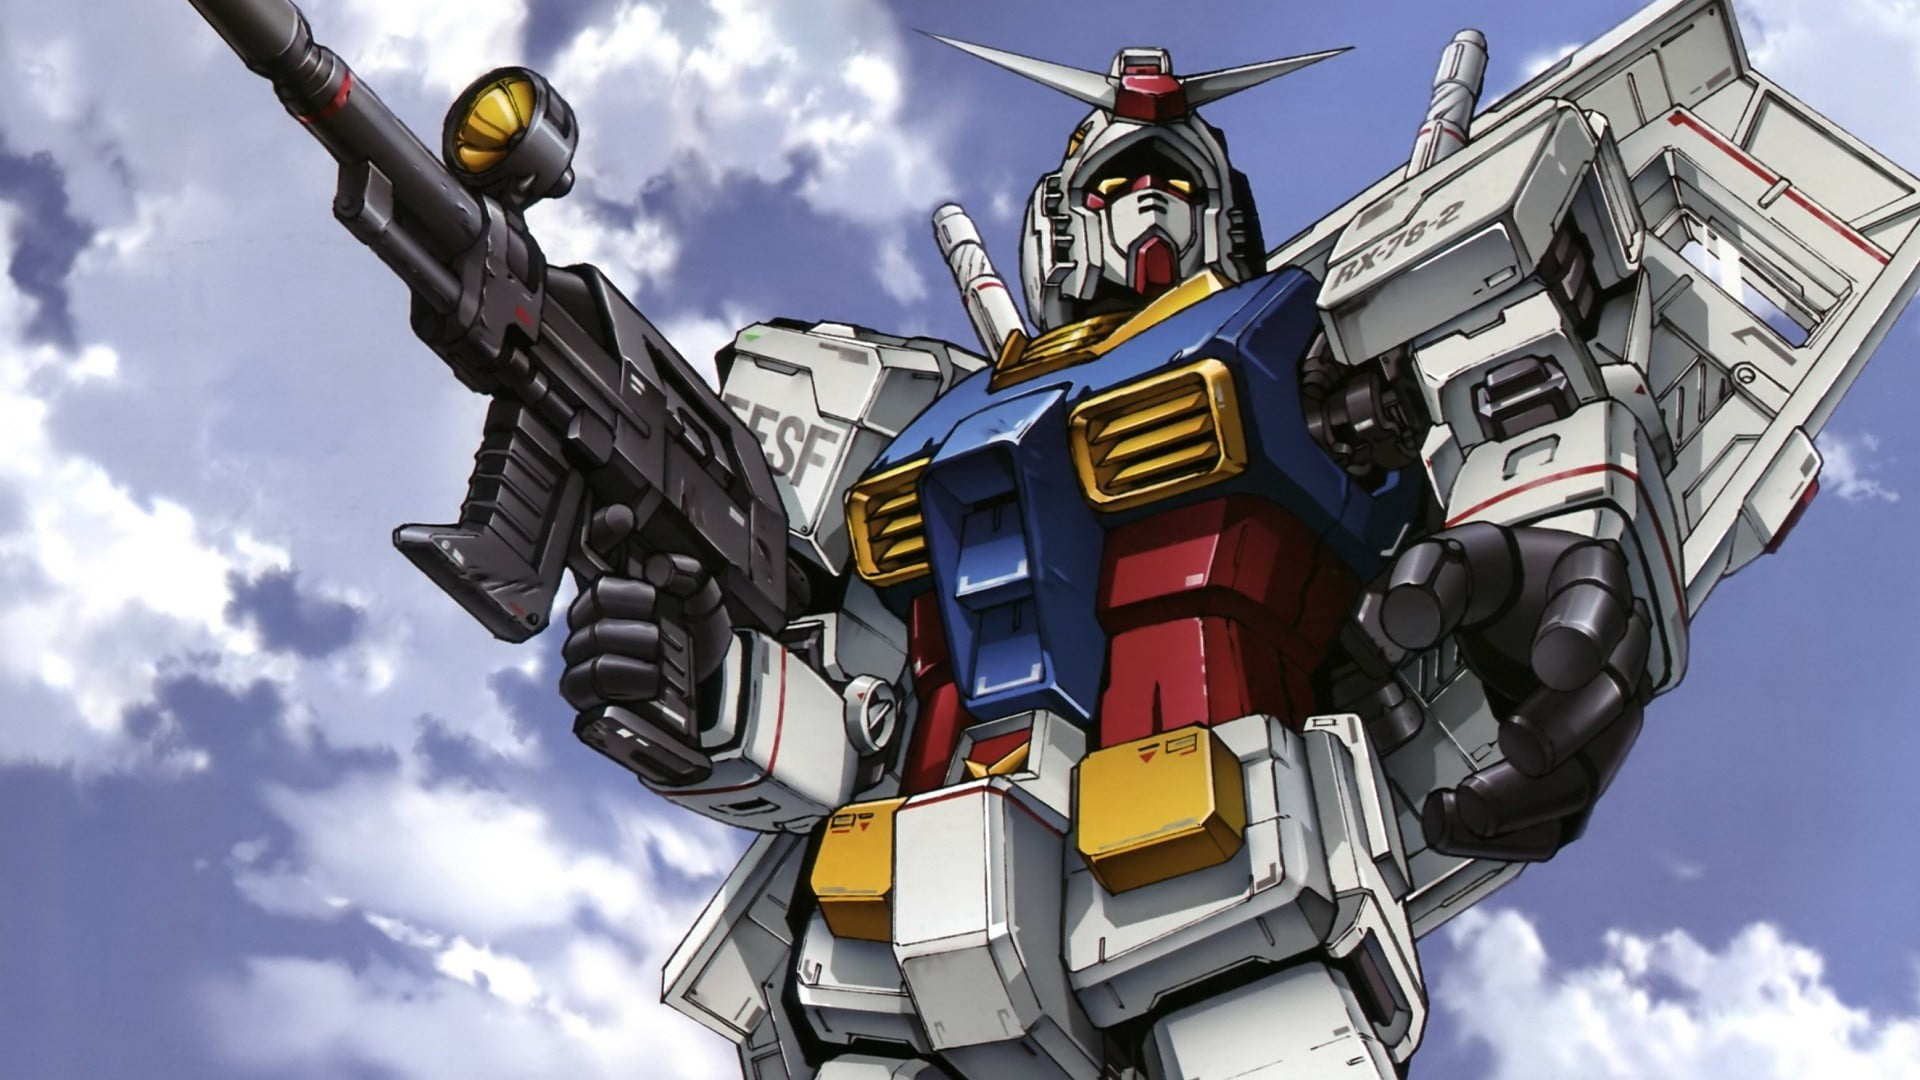 Gundam Anime , HD Wallpaper & Backgrounds